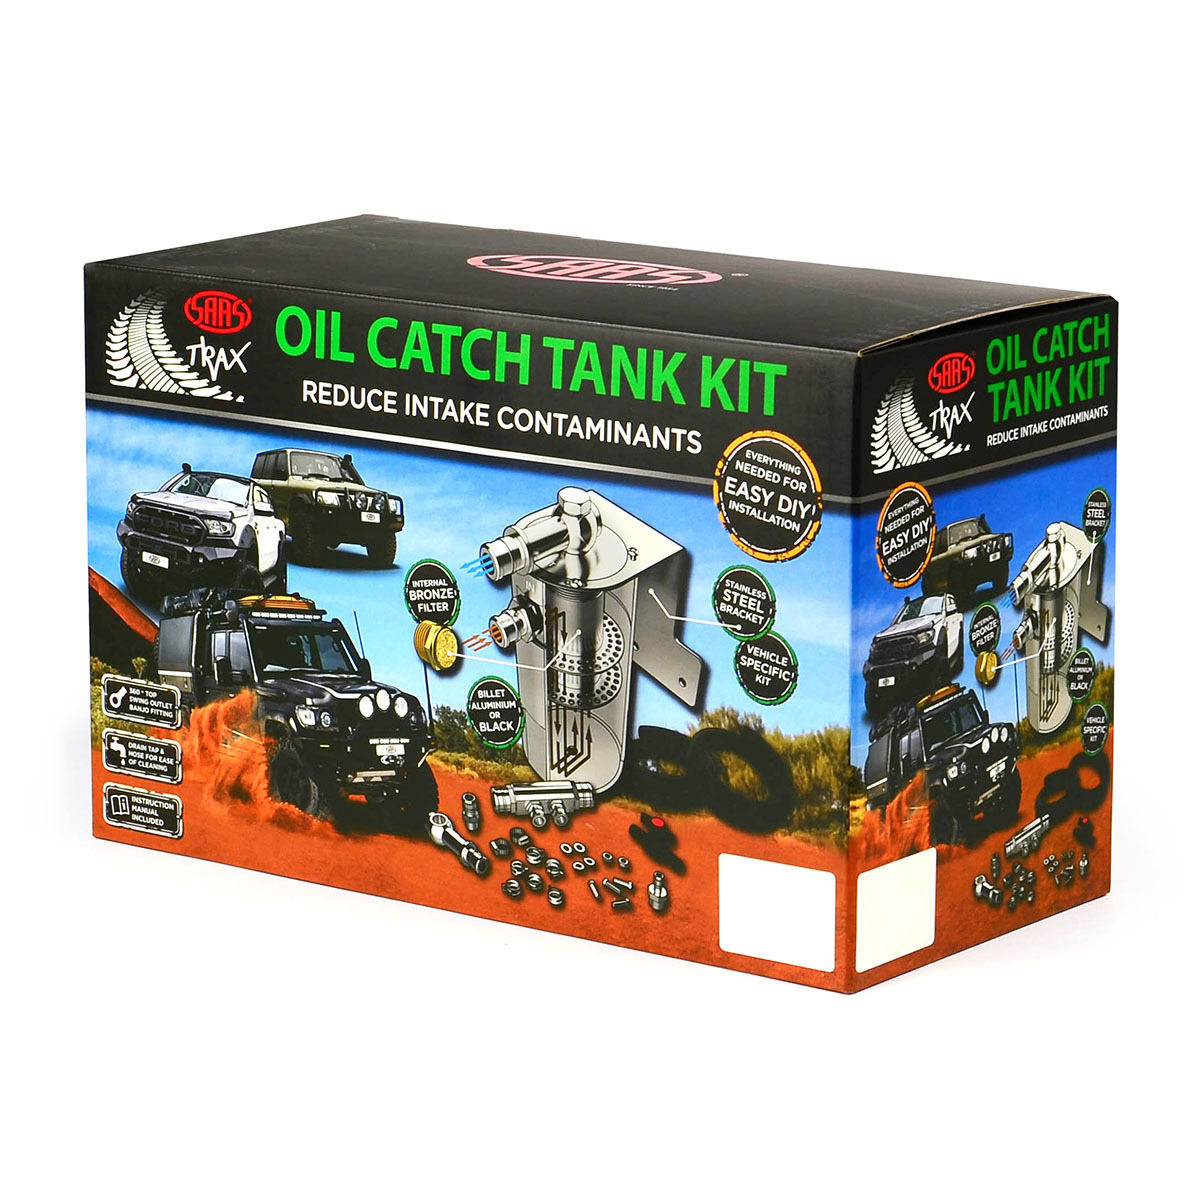 Oil Catch Tank Full Kit suit Landcruiser 200 Series 4.5L